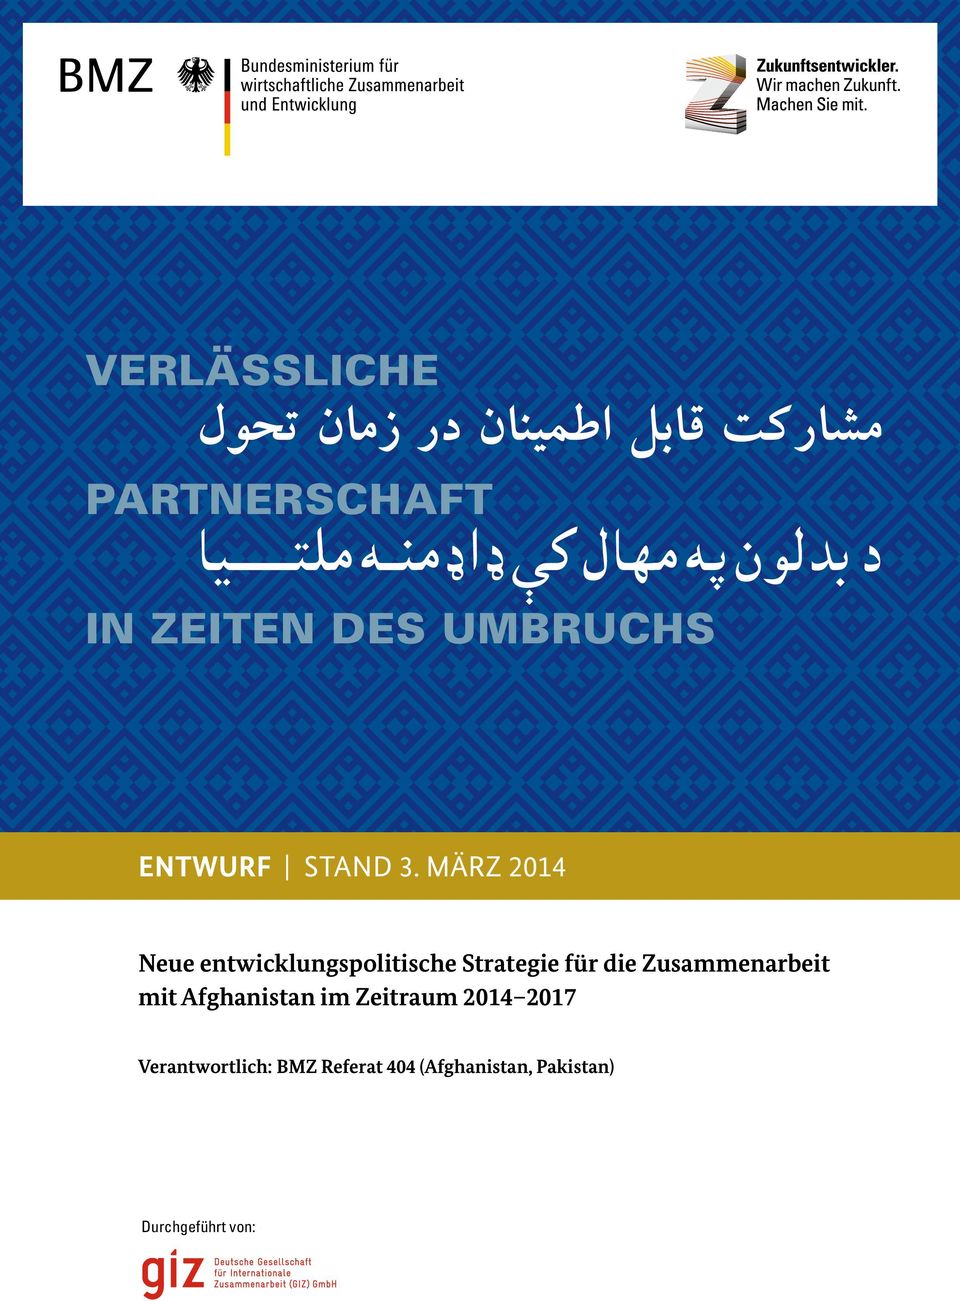 März 2014 Neue entwicklungspolitische Strategie für die Zusammenarbeit mit